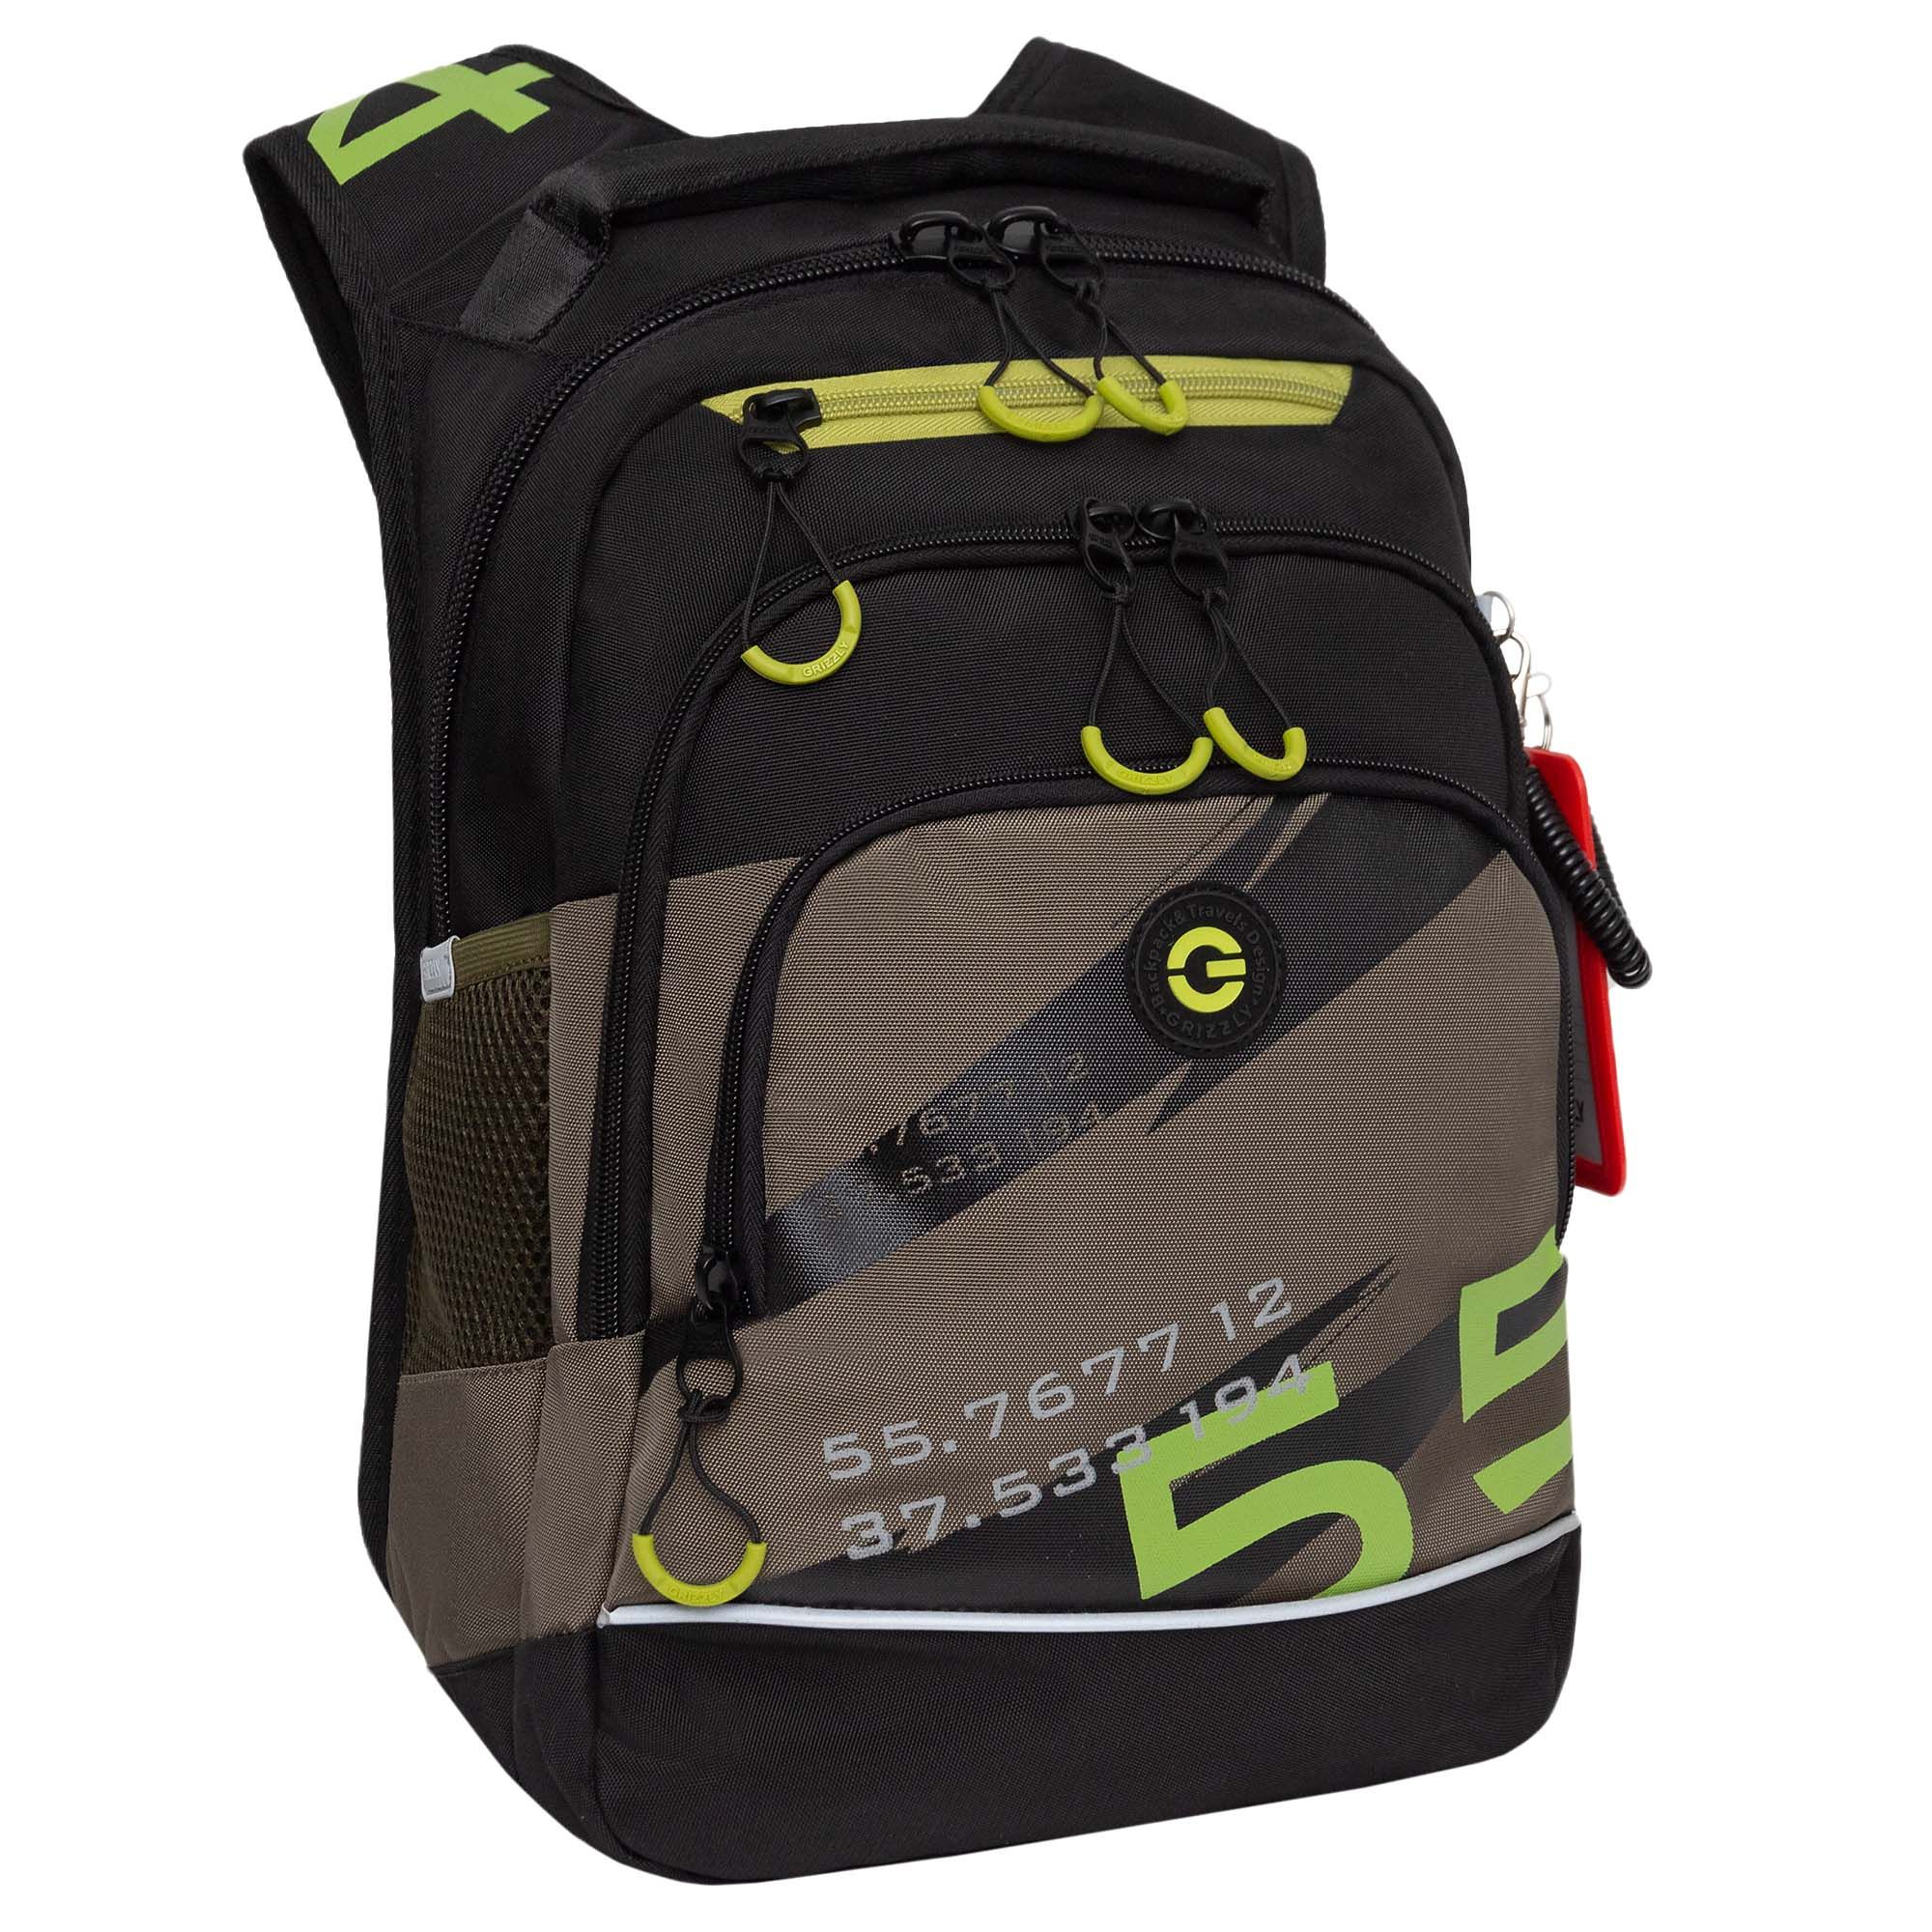 Рюкзак школьный GRIZZLY RB-450-2 с карманом для ноутбука 13 анатомический хаки рюкзак молодежный grizzly rd 440 4 1 с карманом для ноутбука 13 золото